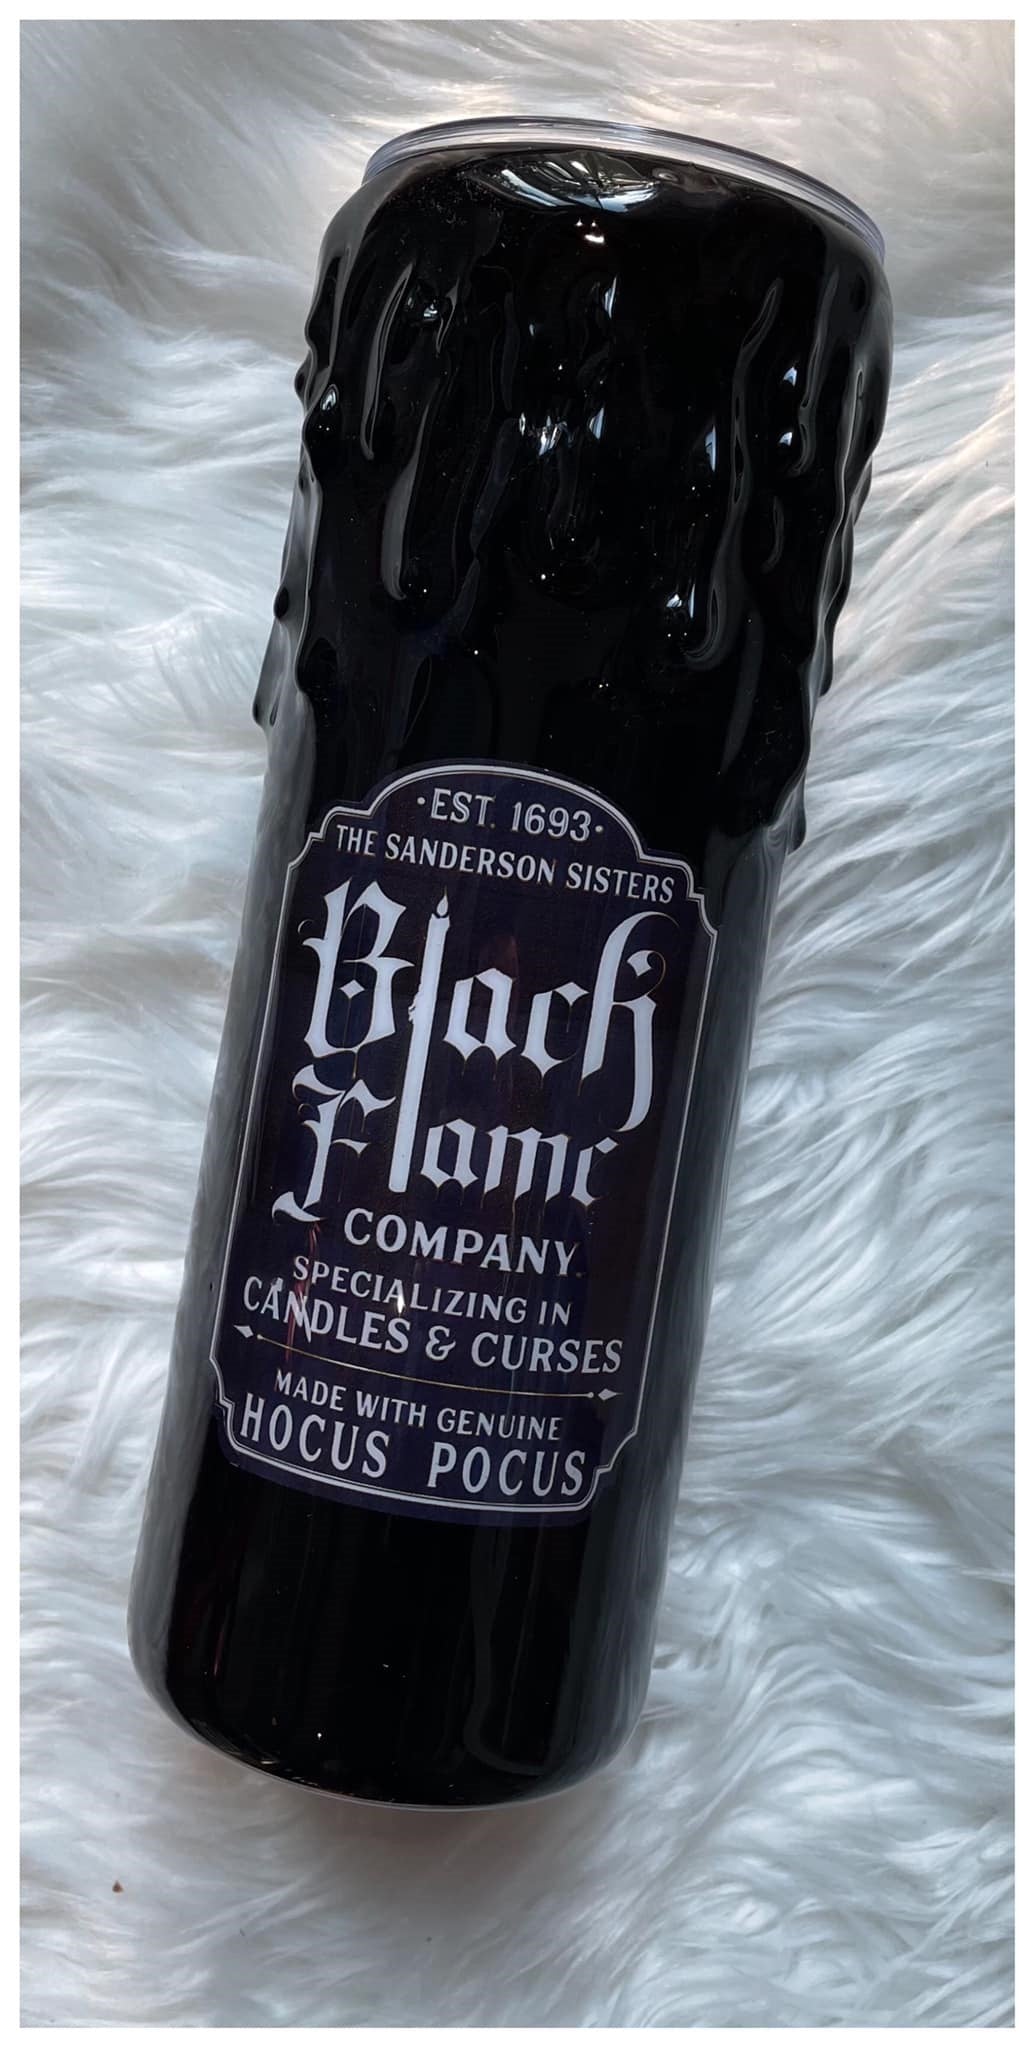 Black Flame